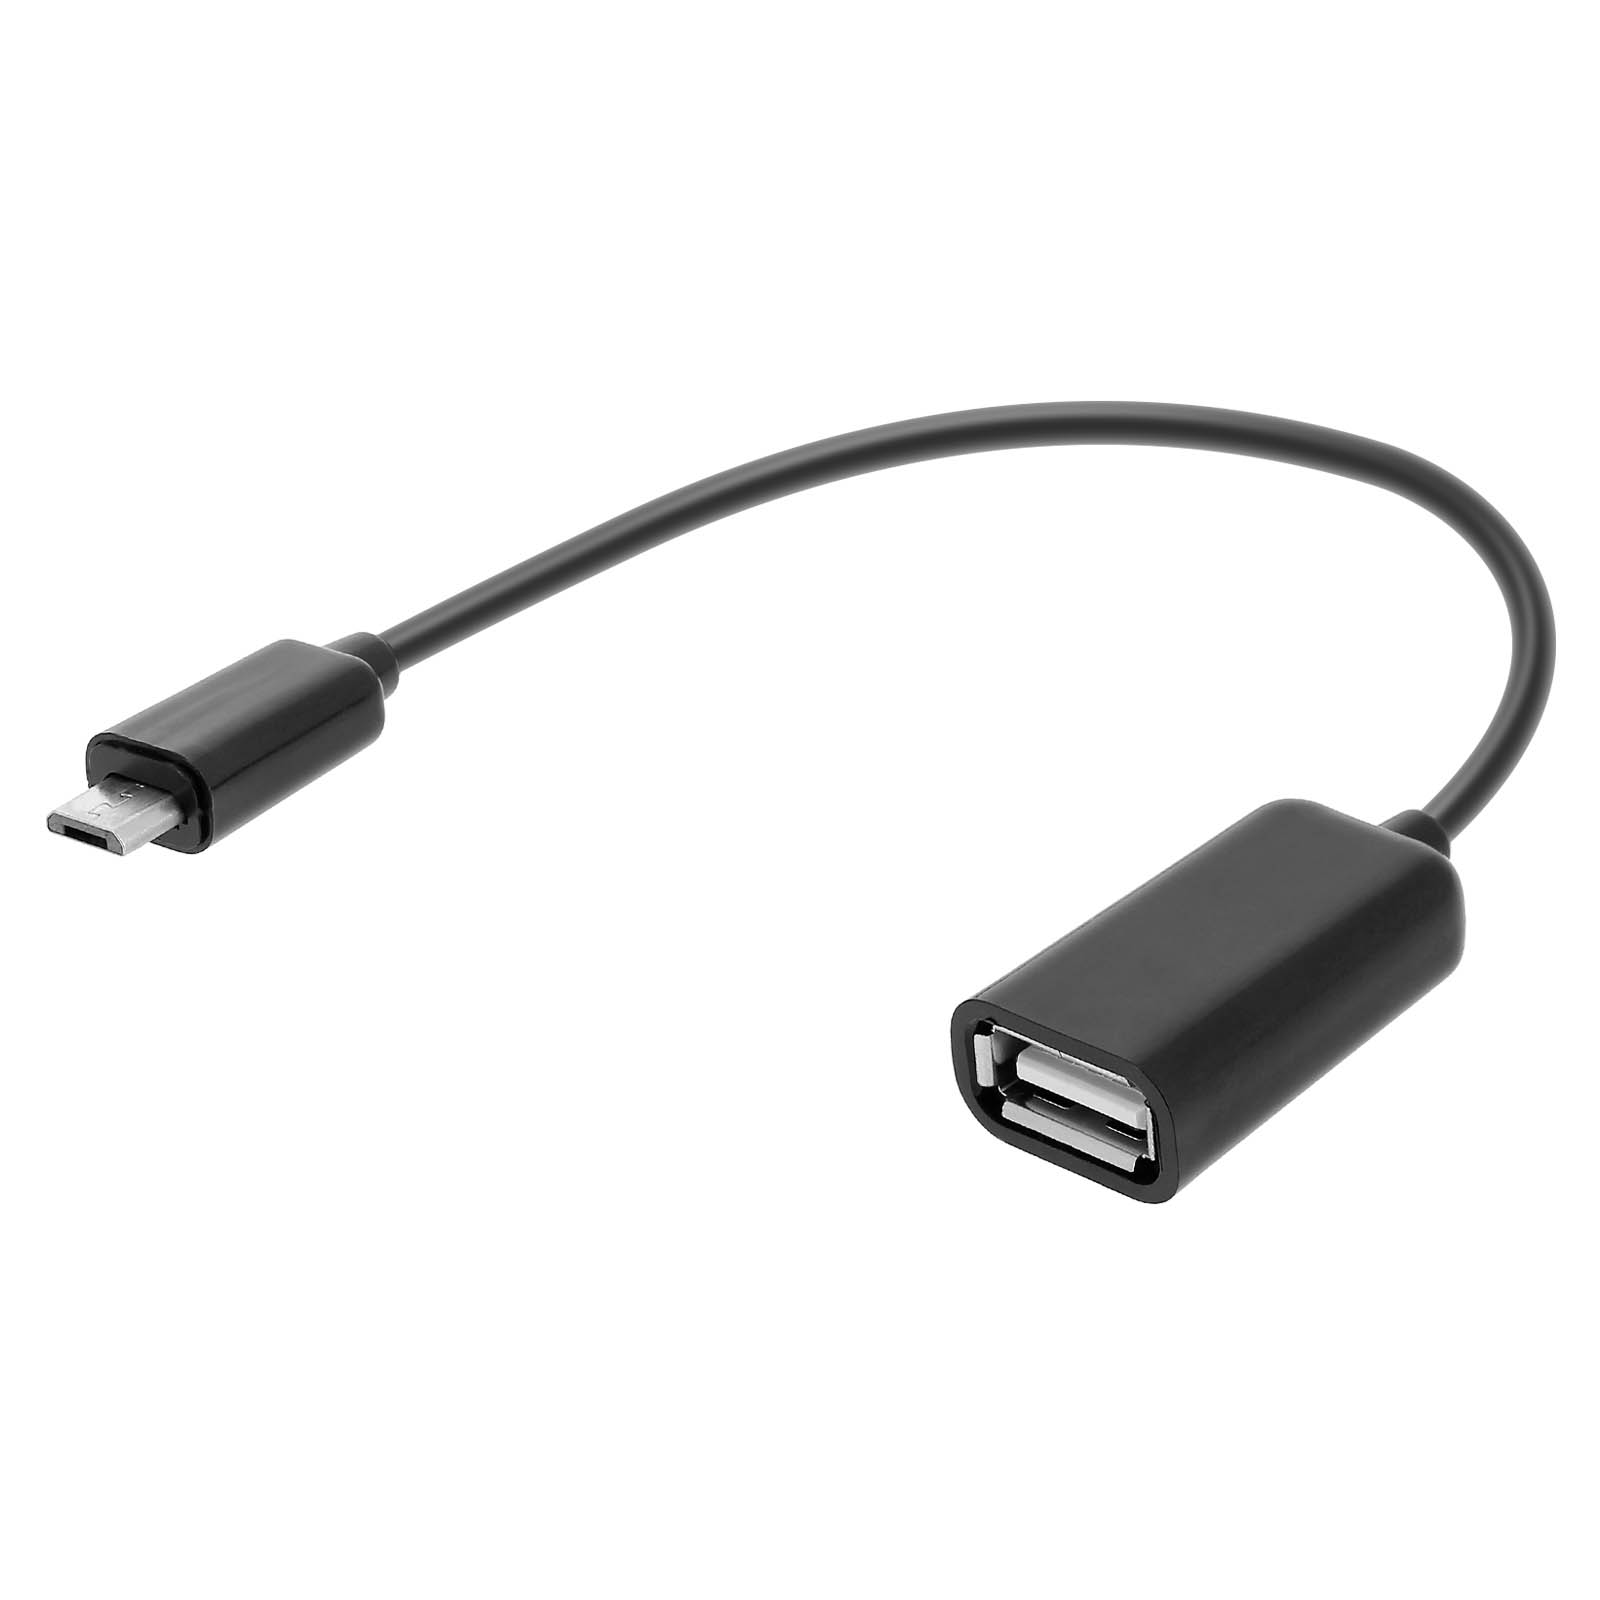 Adaptateur OTG Micro USB vers USB Femelle - Noir - Français